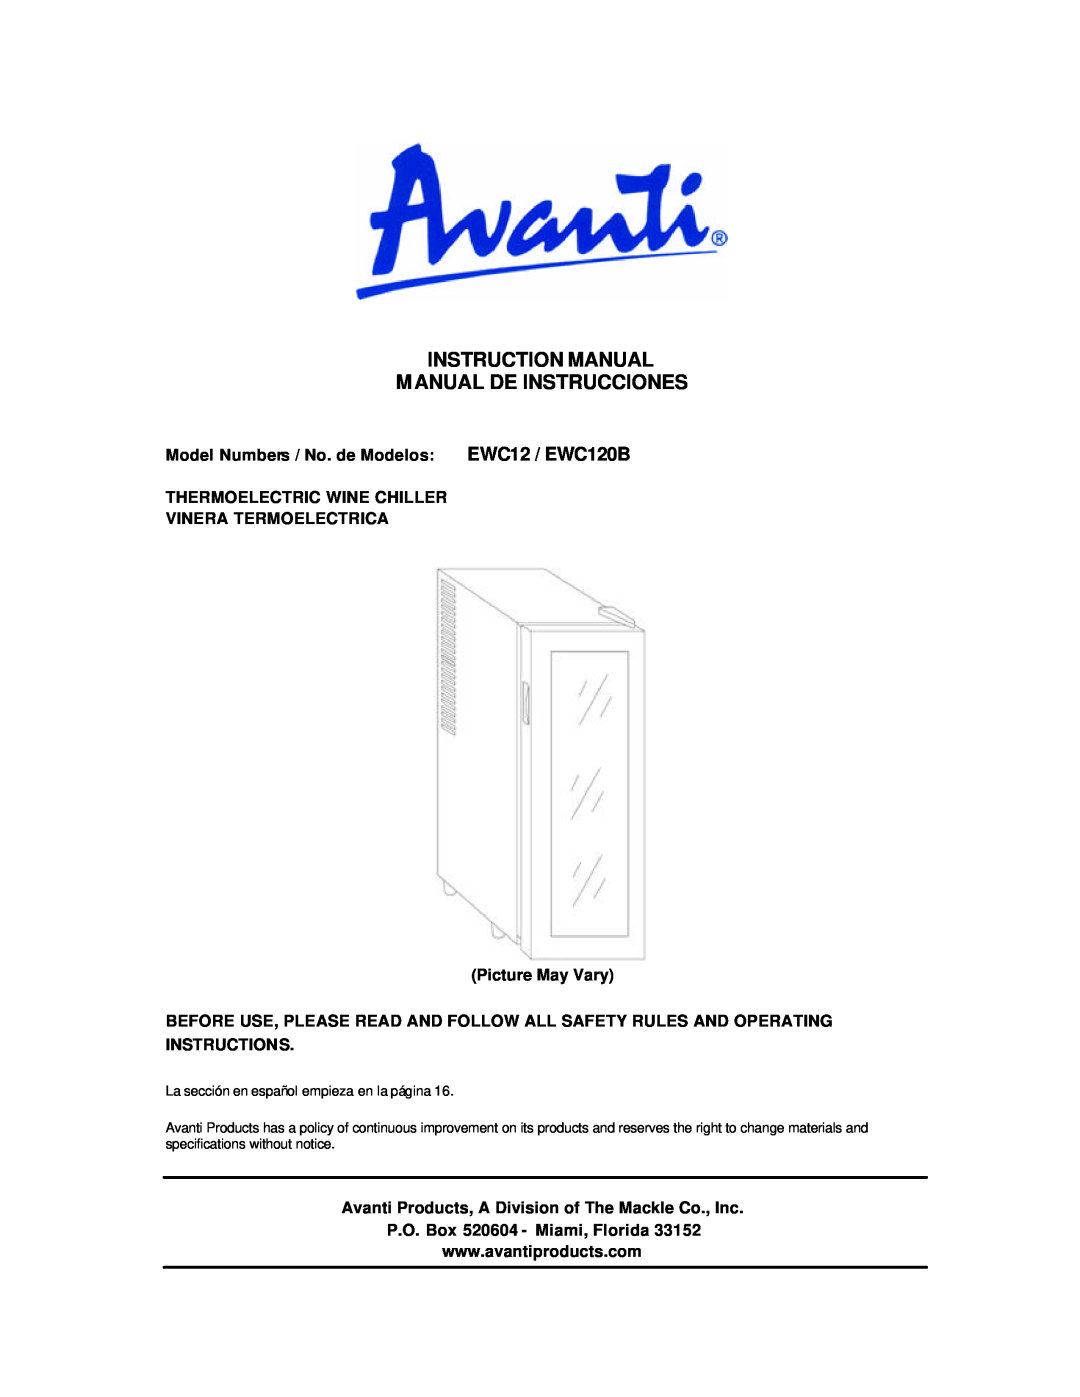 Avanti EWC12 EWC120B instruction manual Instruction Manual Manual De Instrucciones 